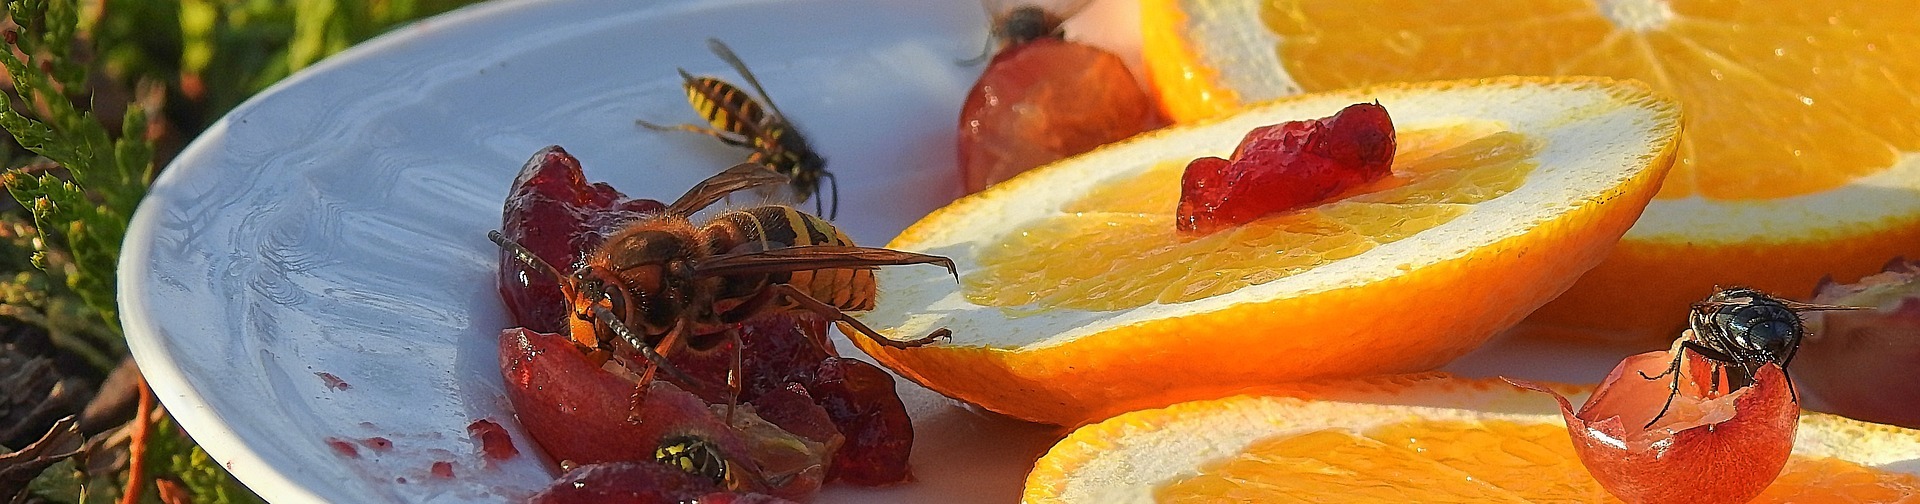 wasps feeding